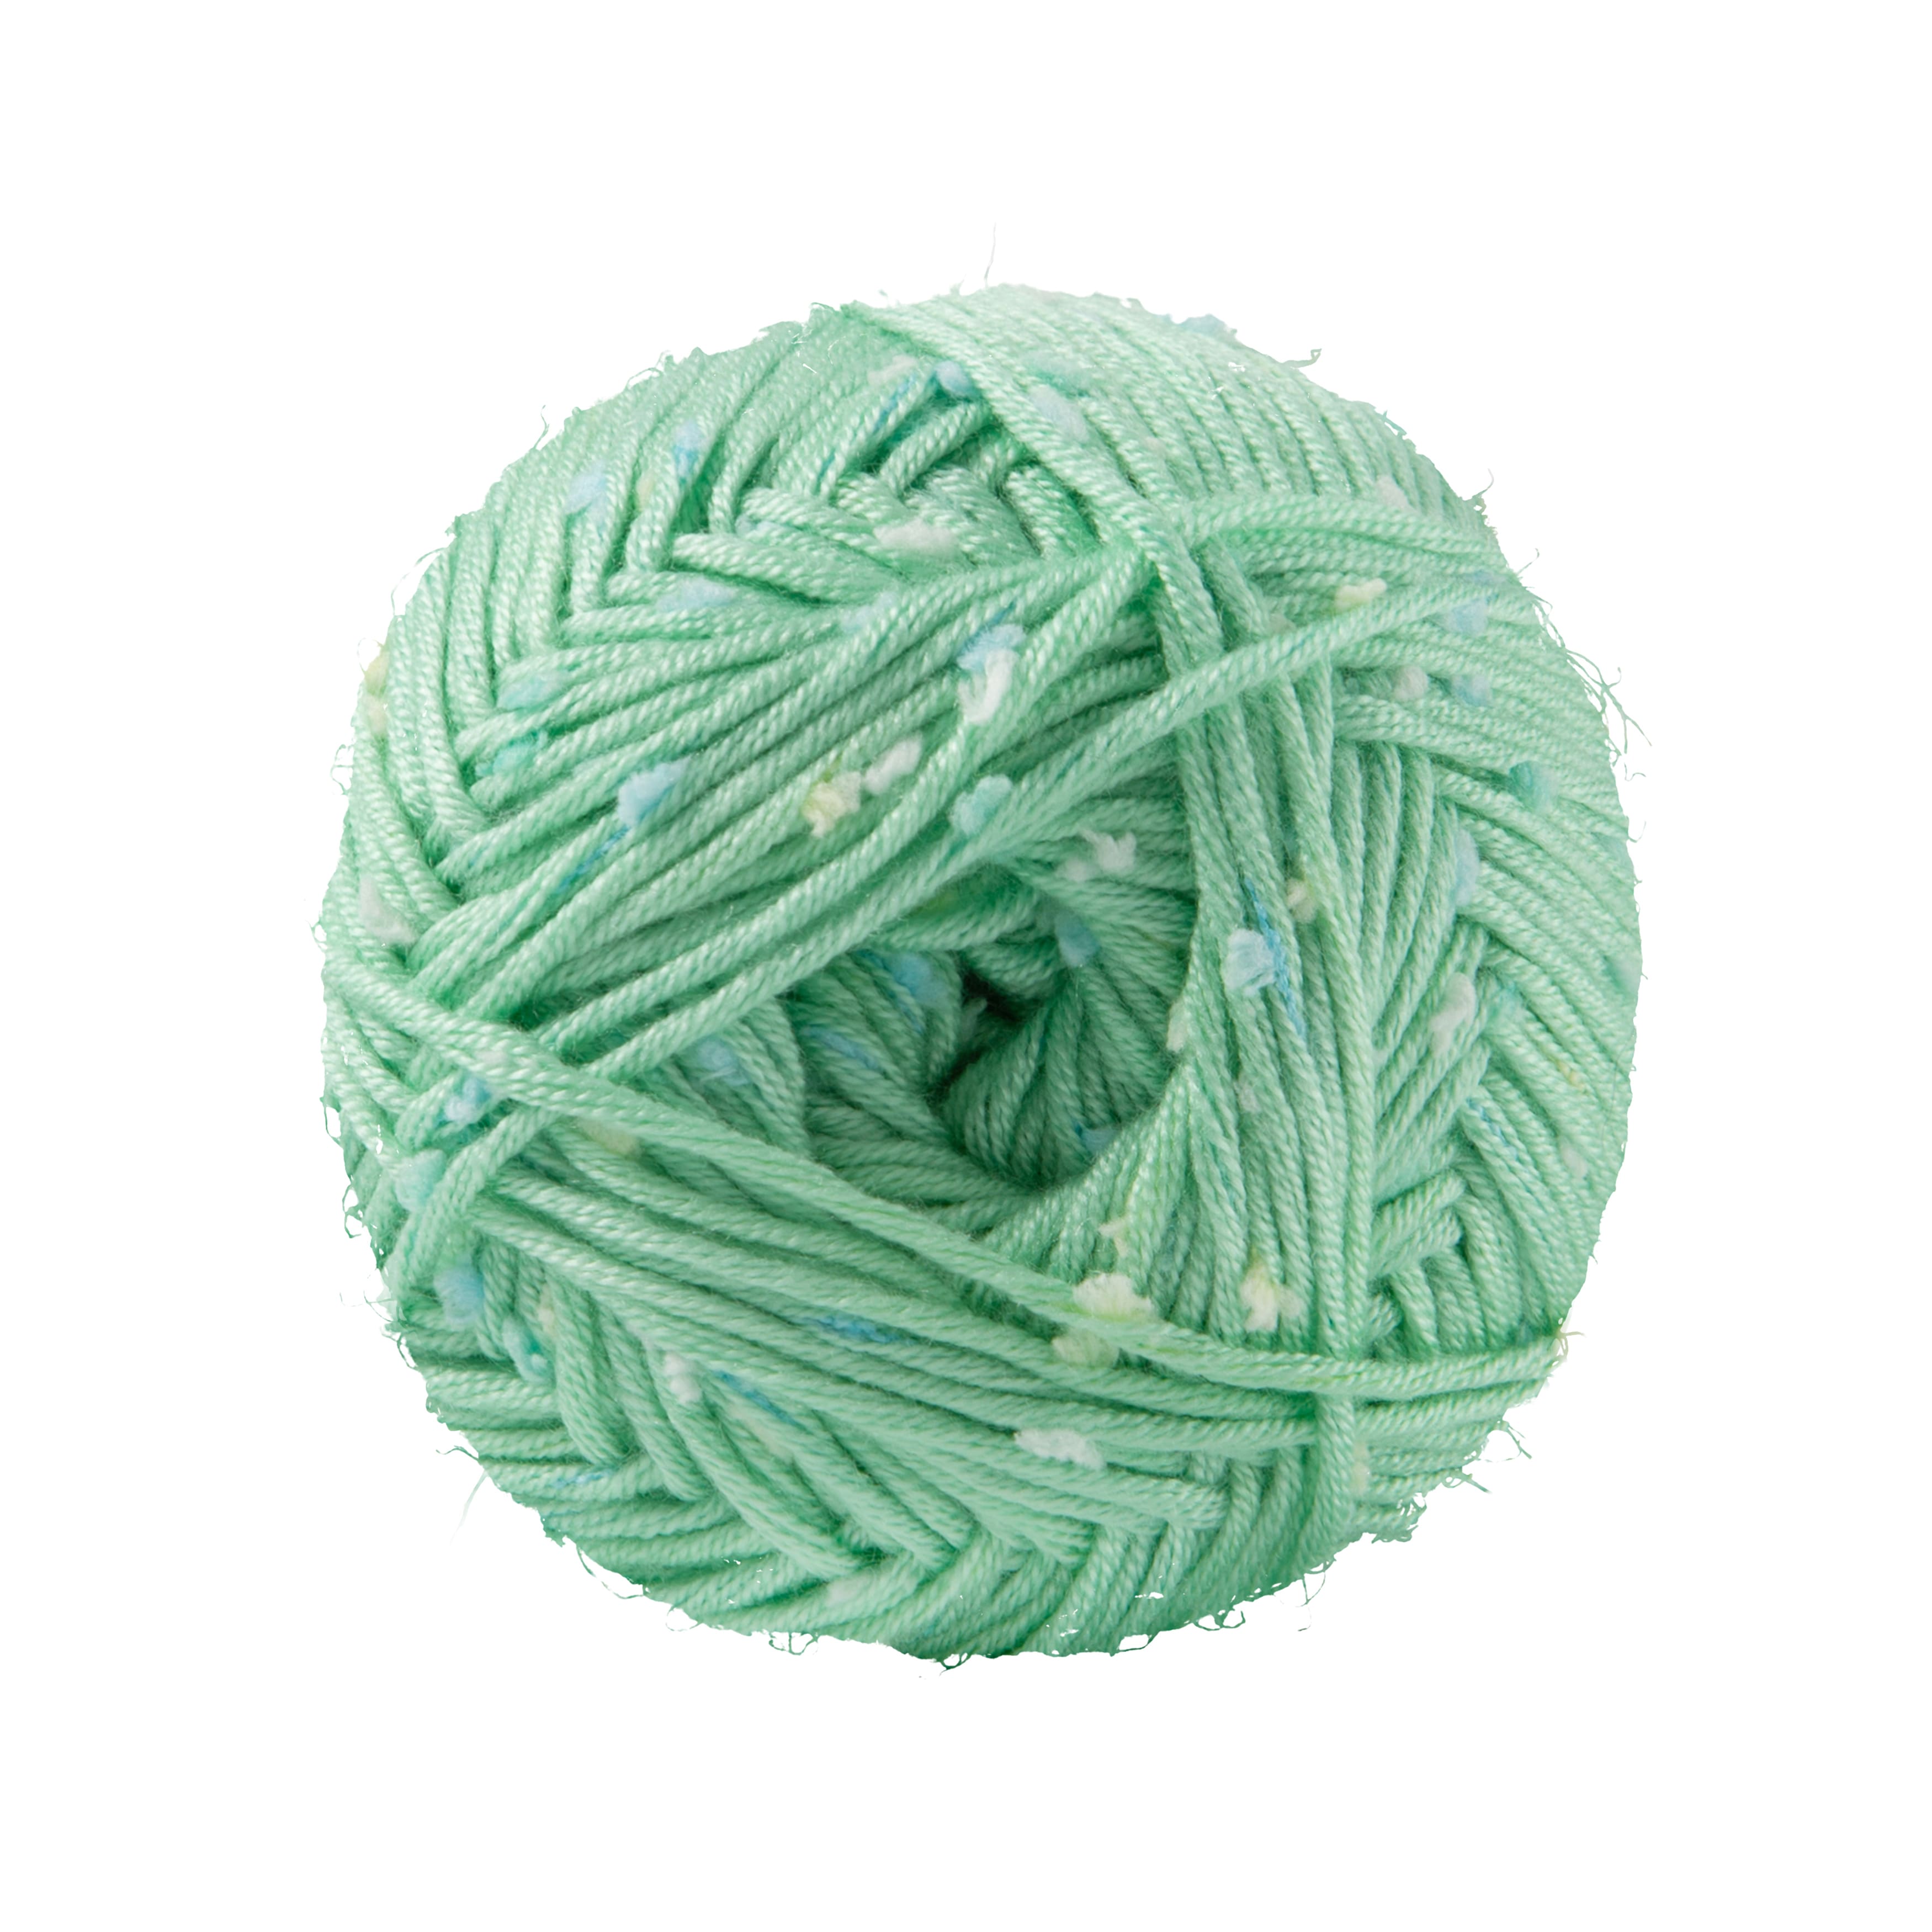 Loops & Threads Flecks Yarn - Silver Lining - 6.53 Ounces - 2 ct